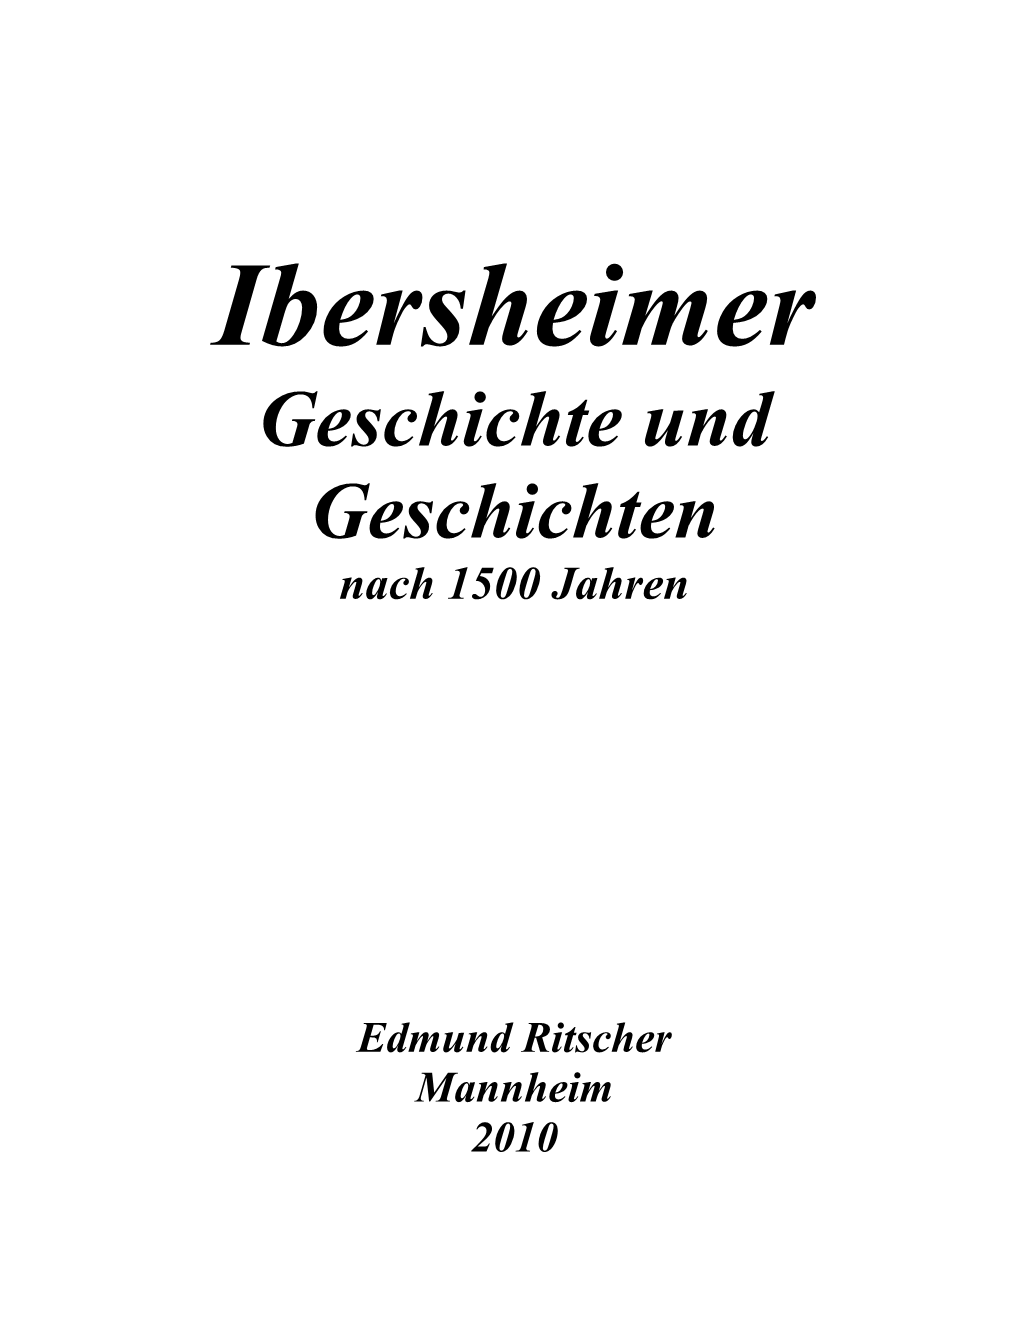 Ibersheimer Geschichte Und Geschichten Nach 1500 Jahren